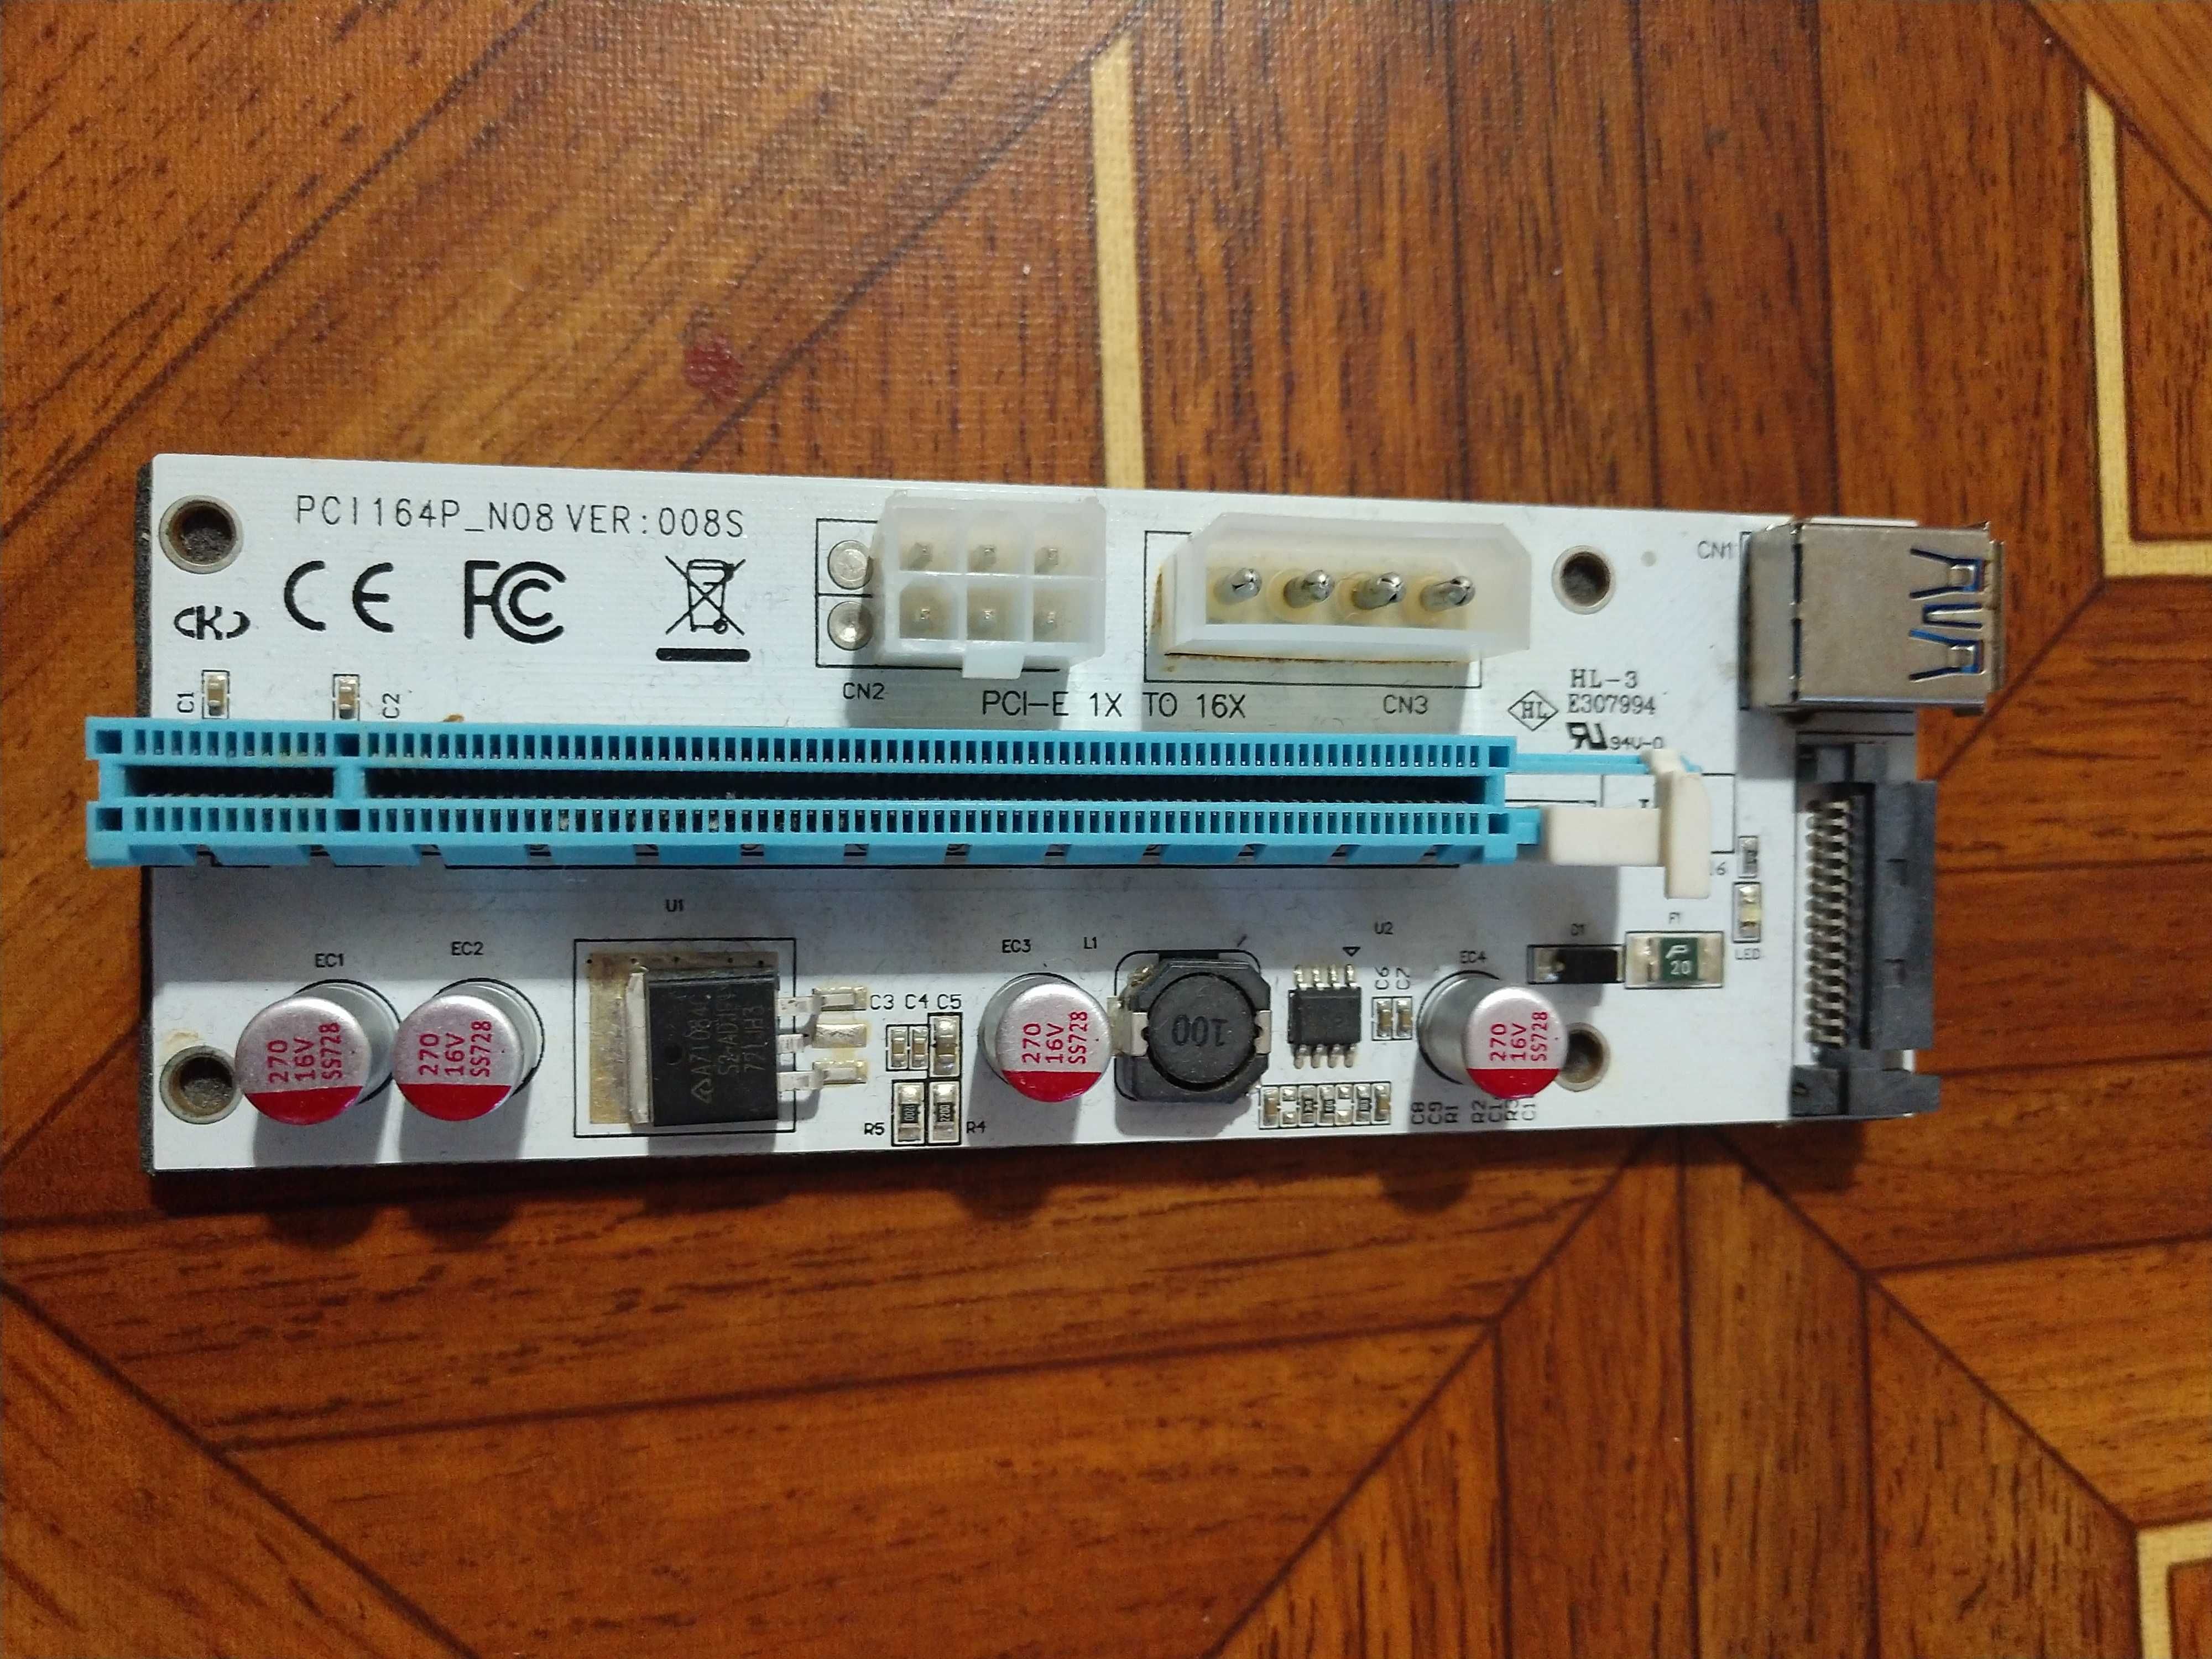 Райзер PCI164P_N08 ver:008s